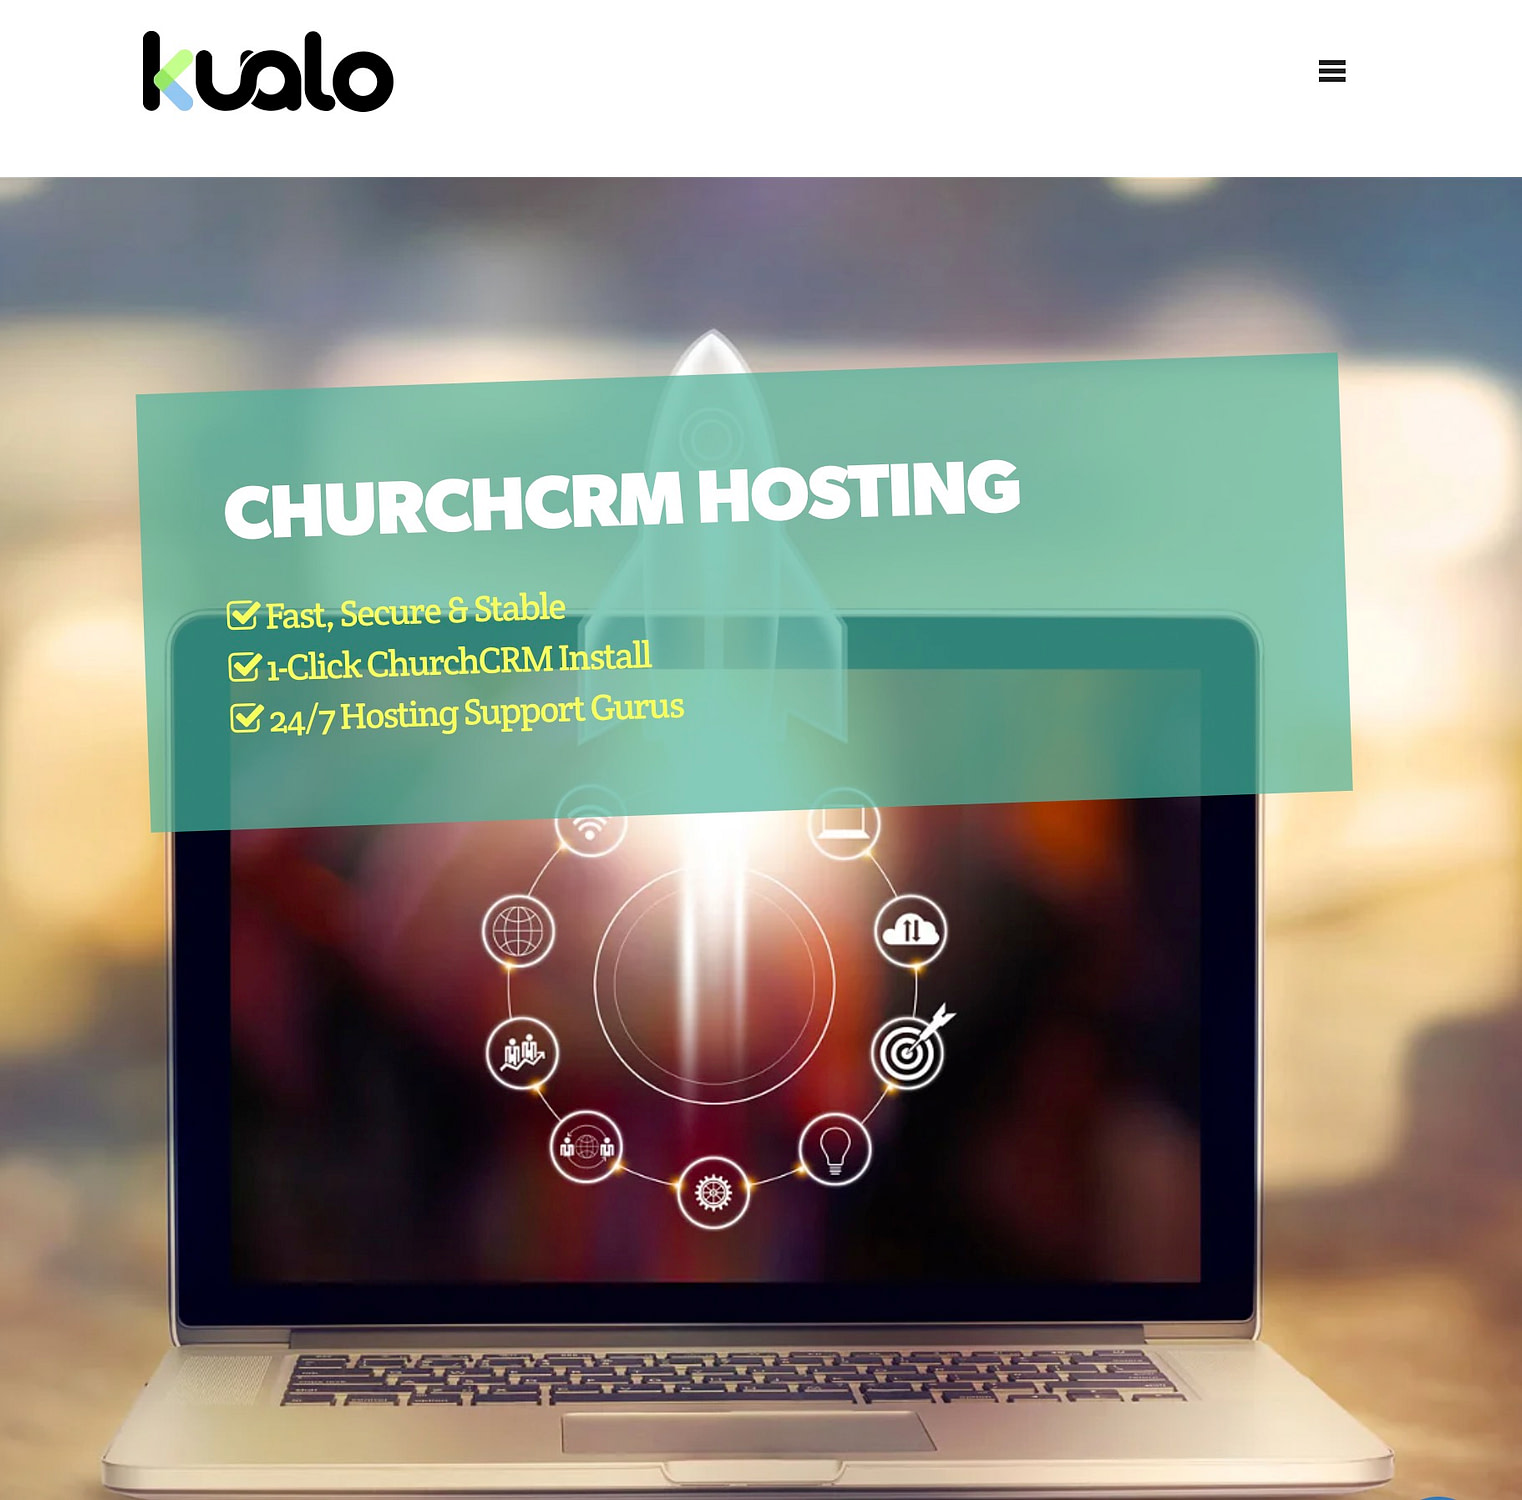 бесплатный хостинг церковных сайтов от Куало